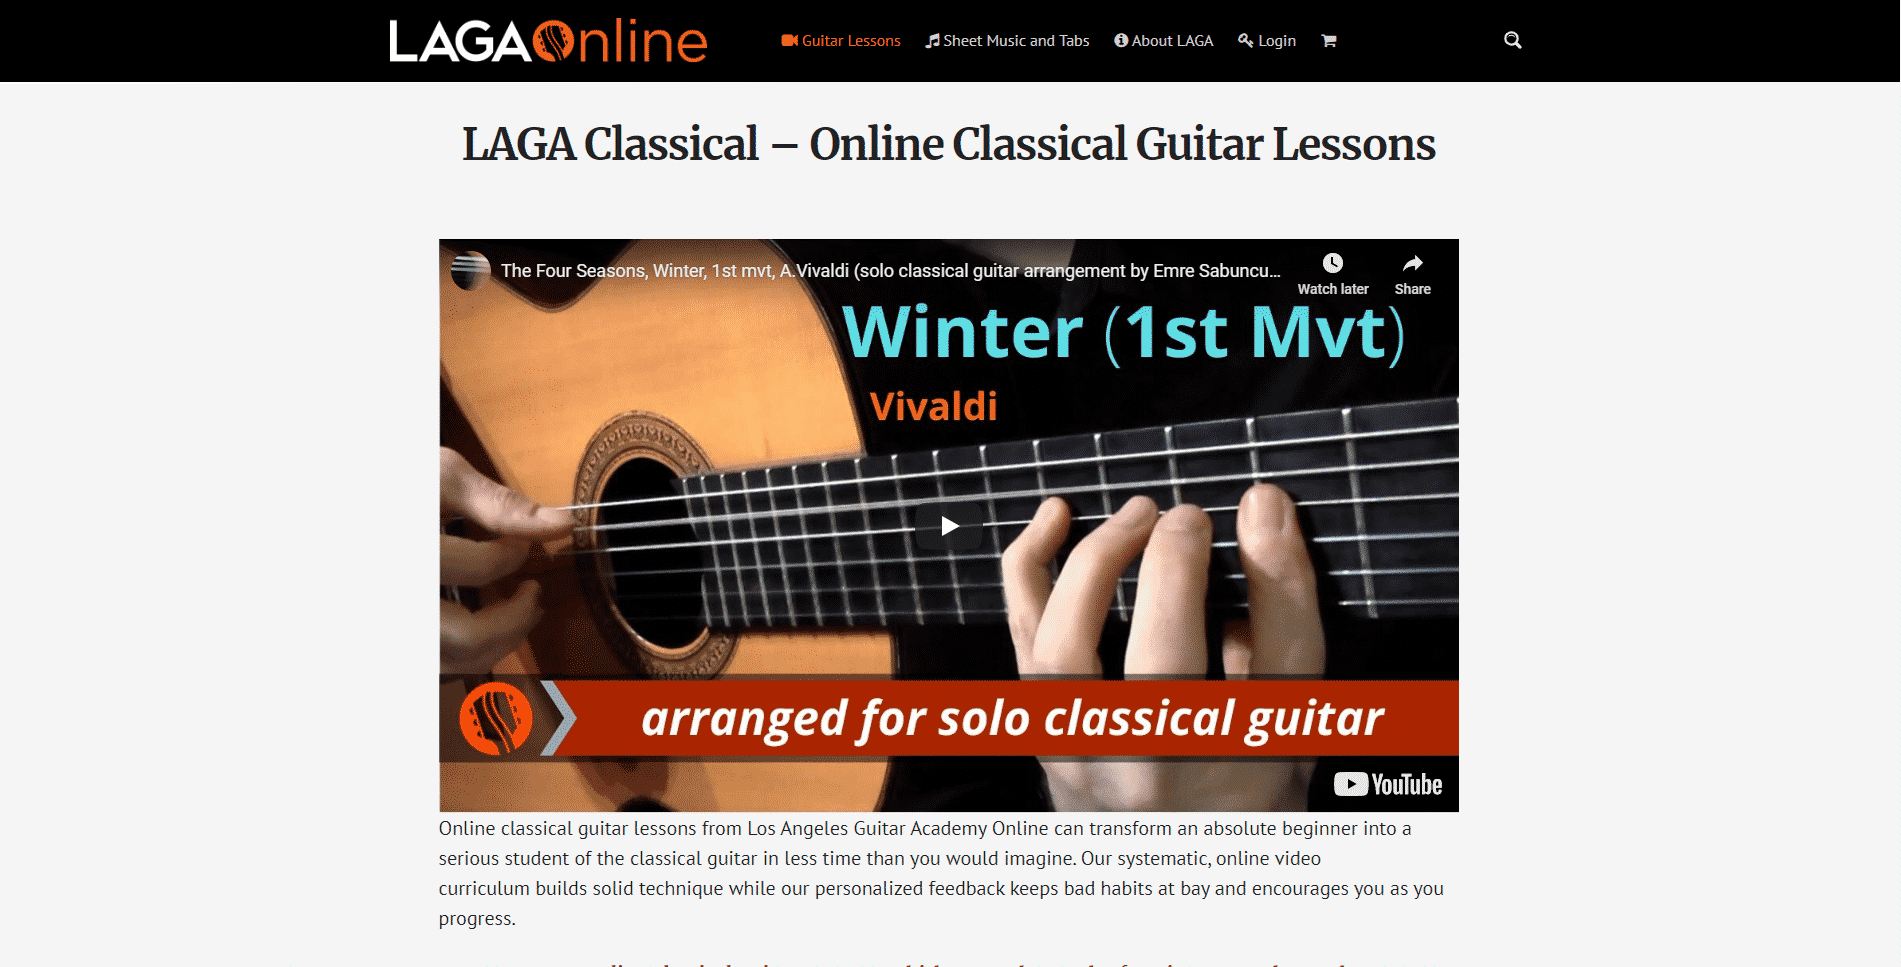 LAGA Online Guitar Lessons for Intermediate Online